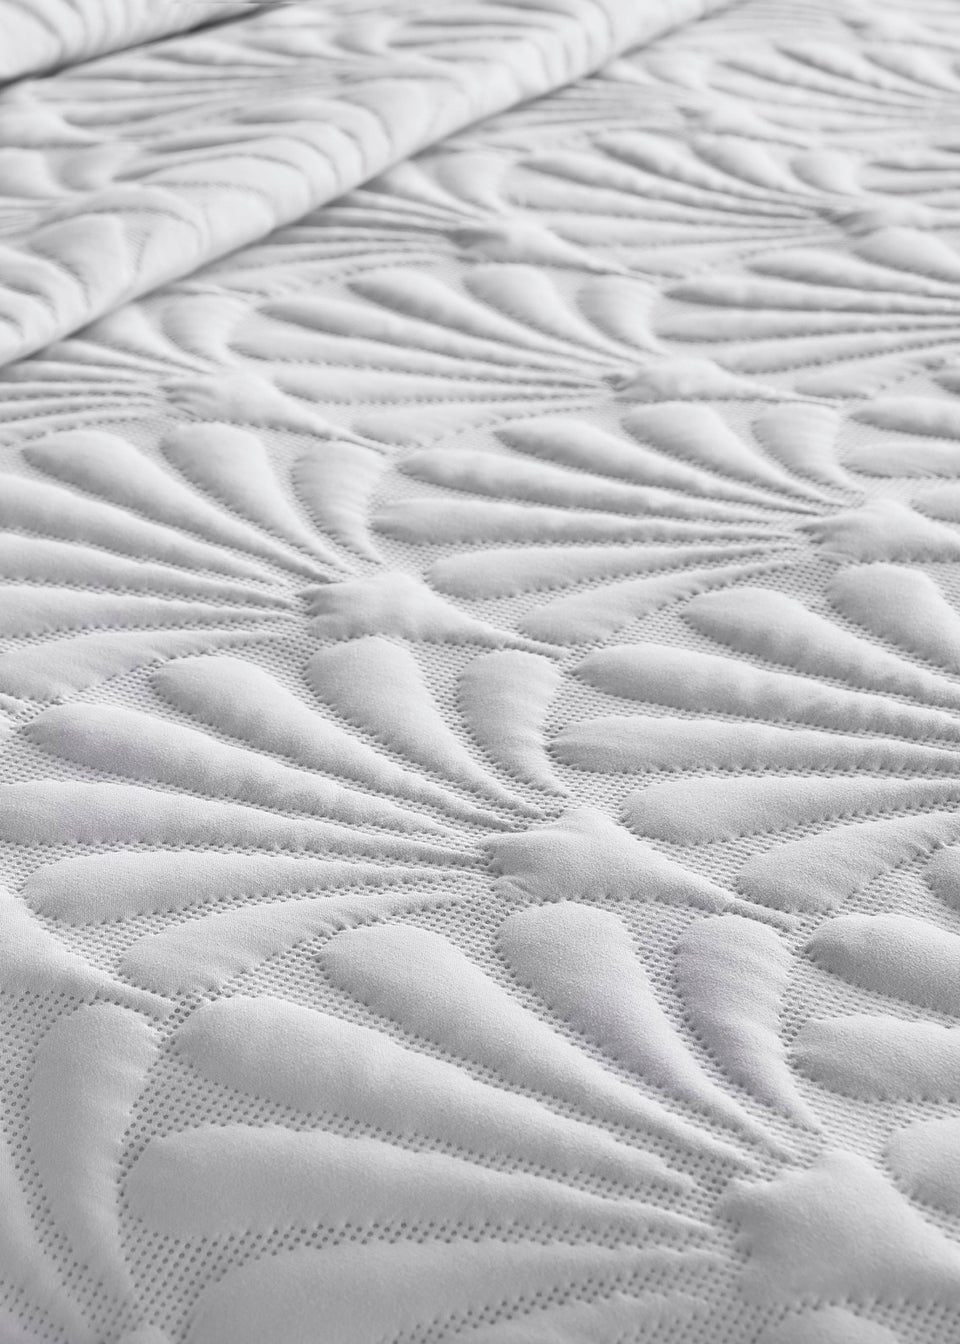 Serene Cavali Pinsonic White Duvet Cover Set